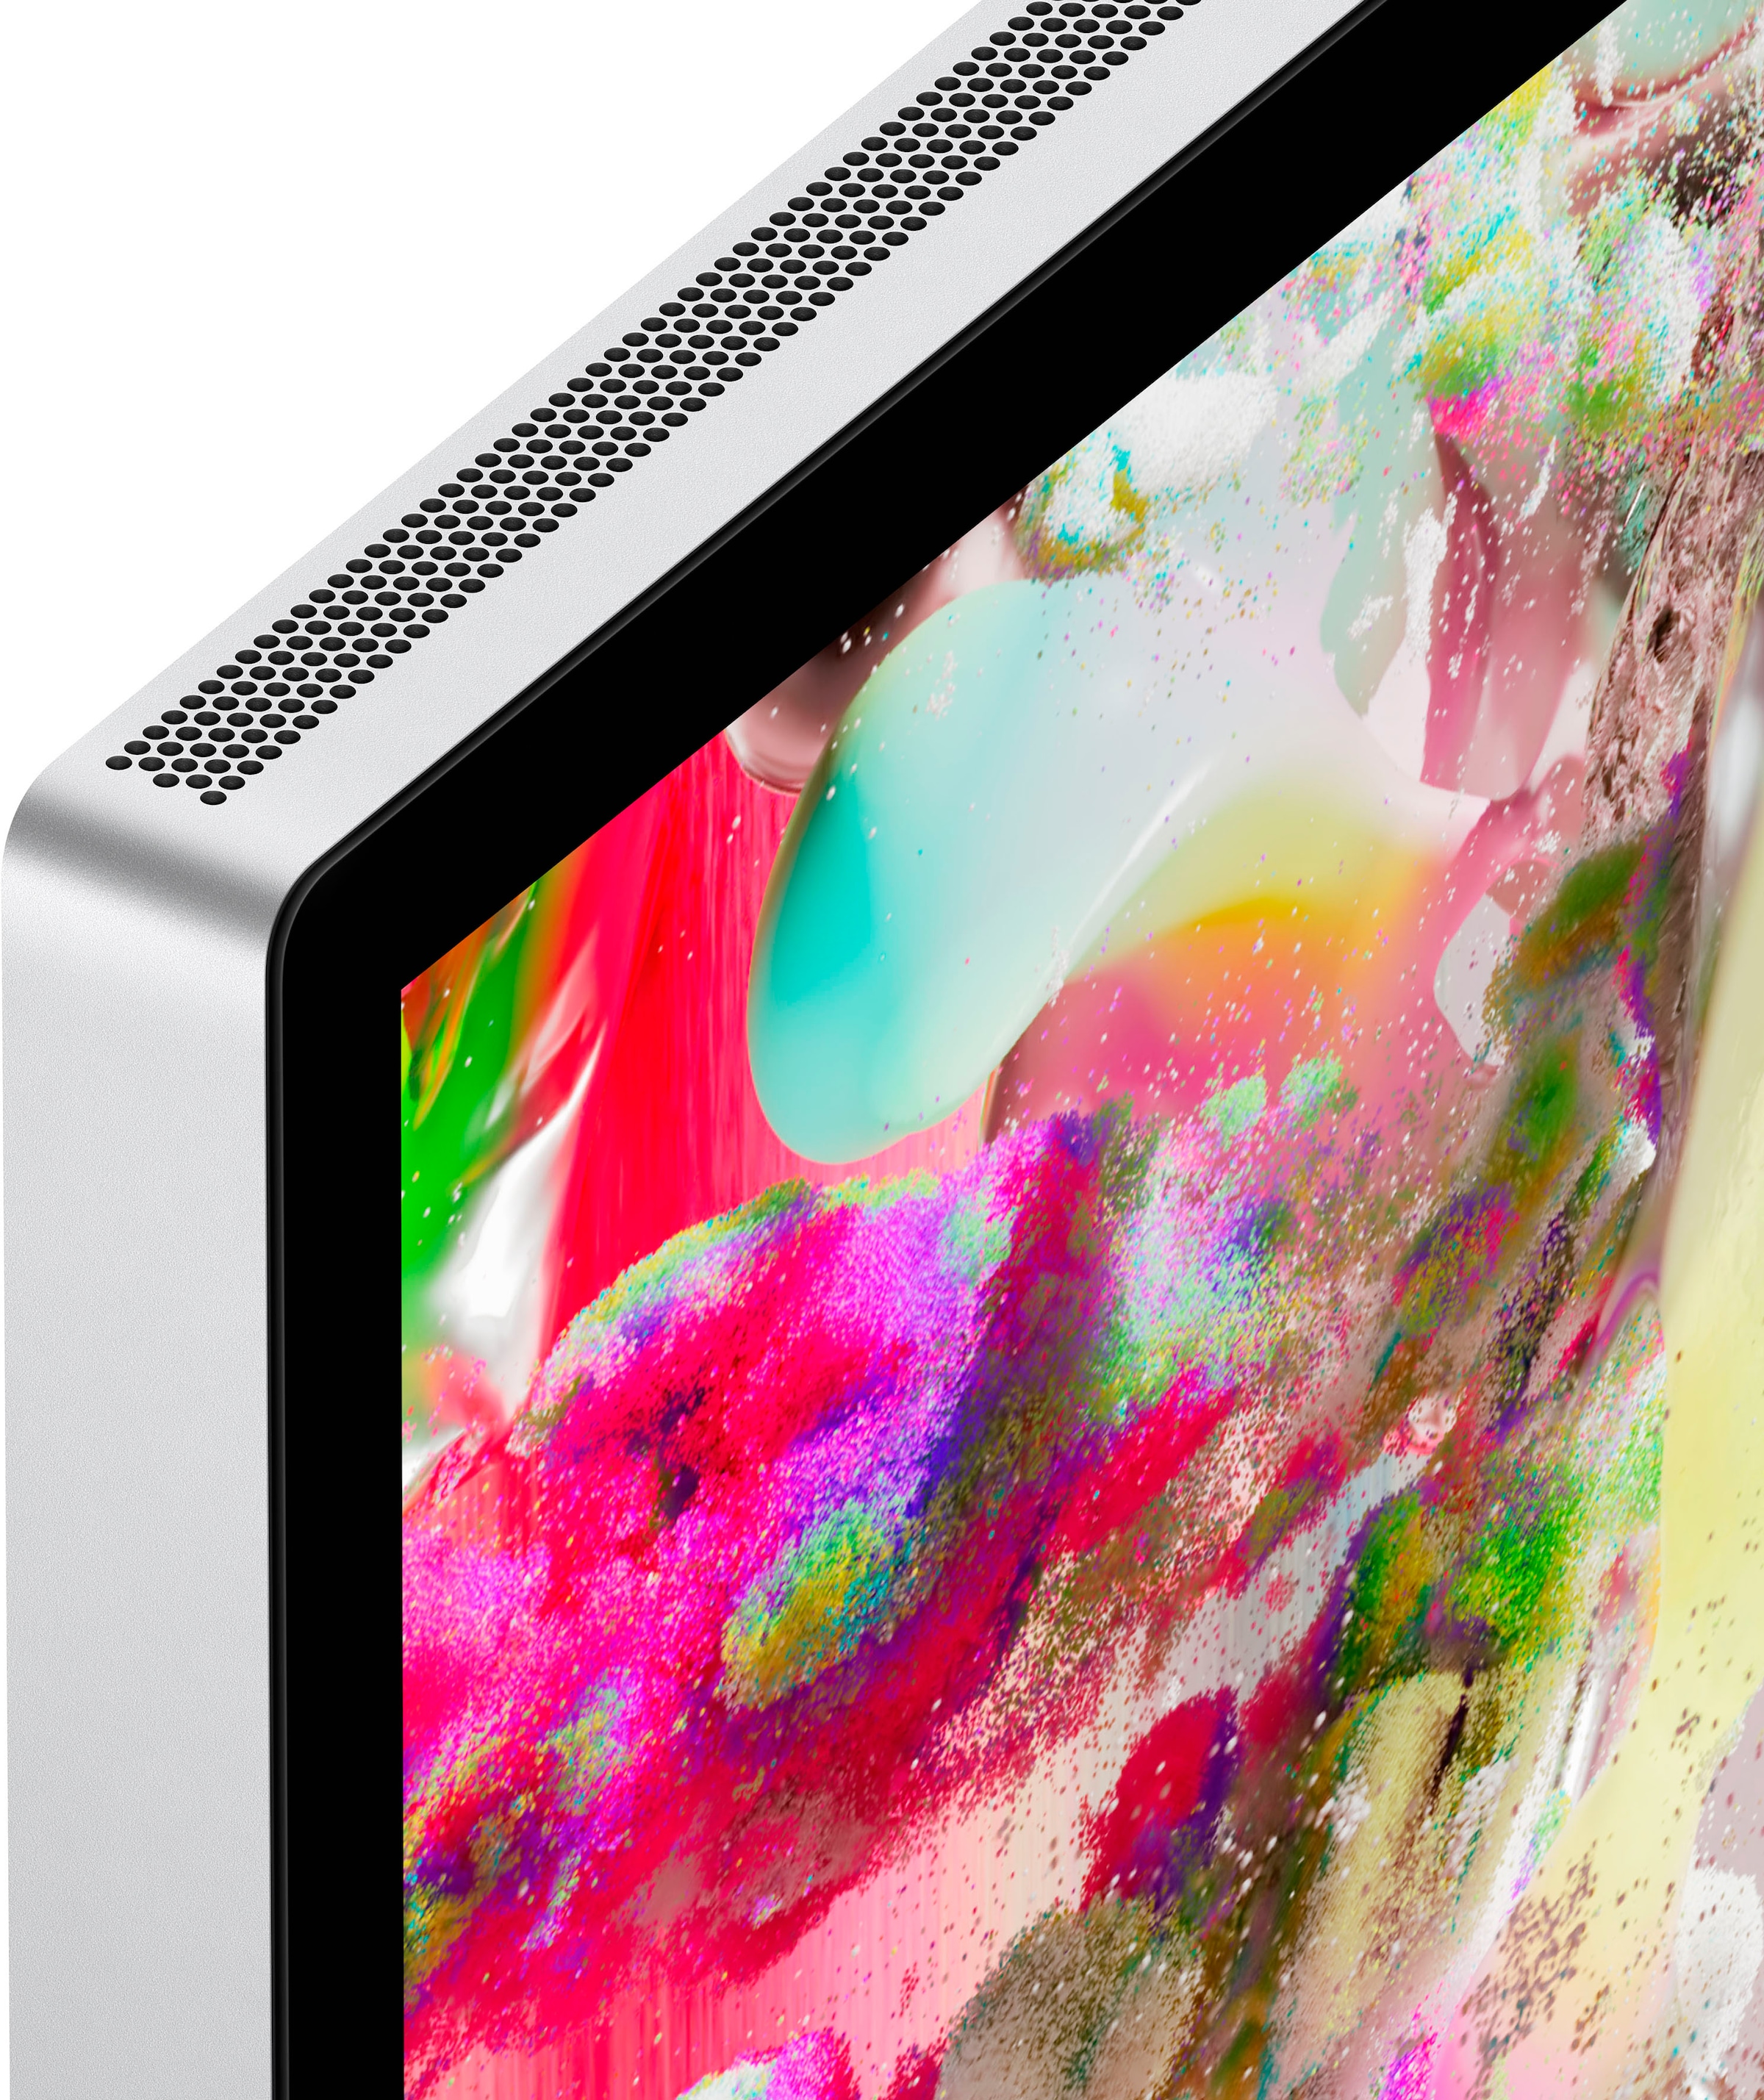 Apple LCD-Monitor »Studio Display«, 68,3 cm/27 Zoll, 5120 x 2880 px, 60 Hz, Standardglas, VESA Mount Halterung (ohne Standfuß)